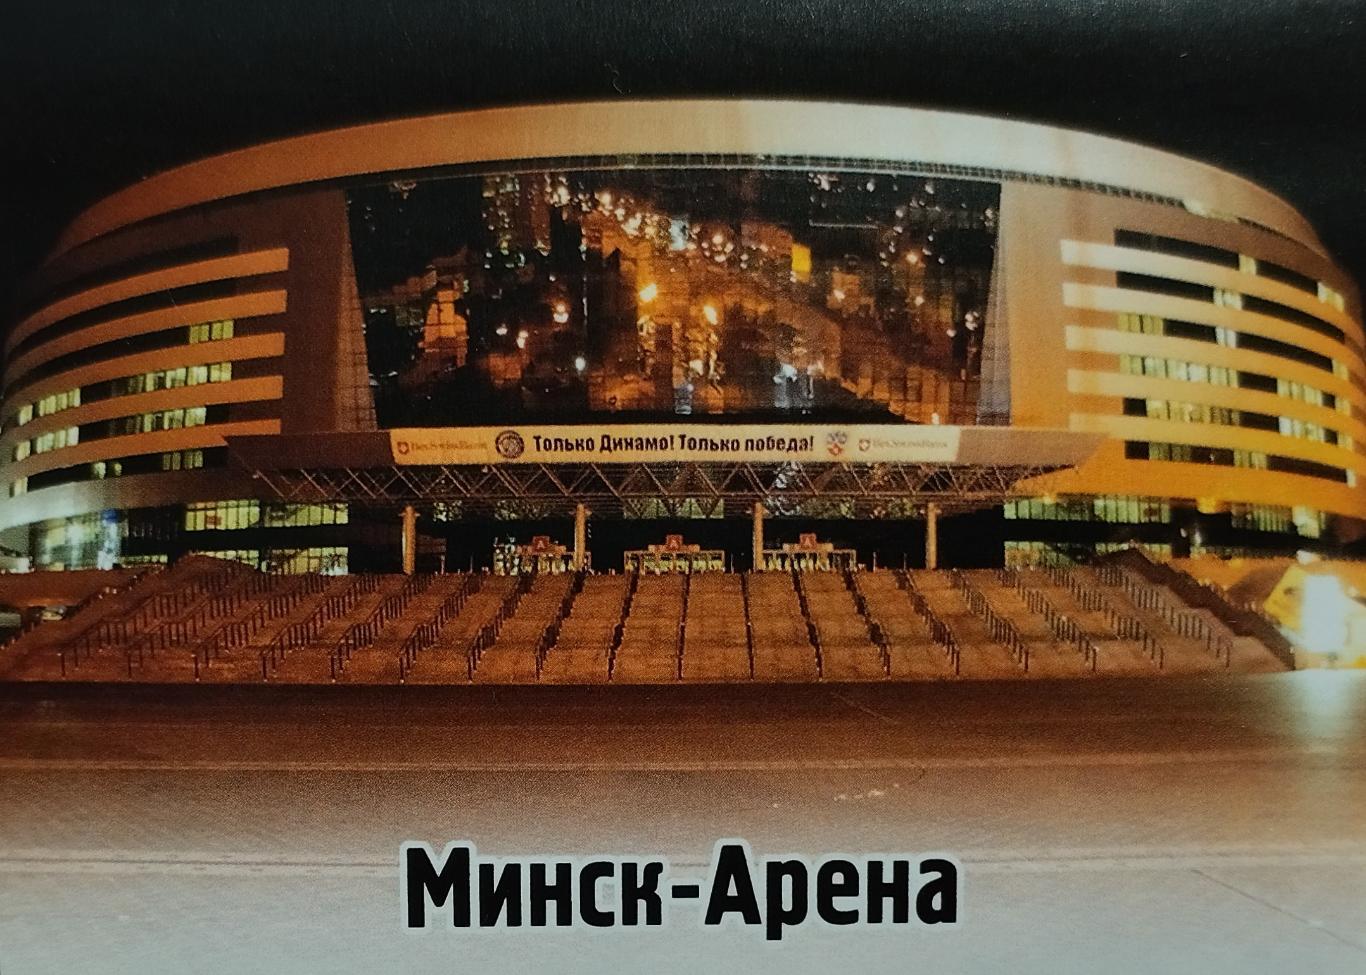 Наклейка. SeReal КХЛ 2012/2013. №189. Минск-Арена. Динамо Минск.